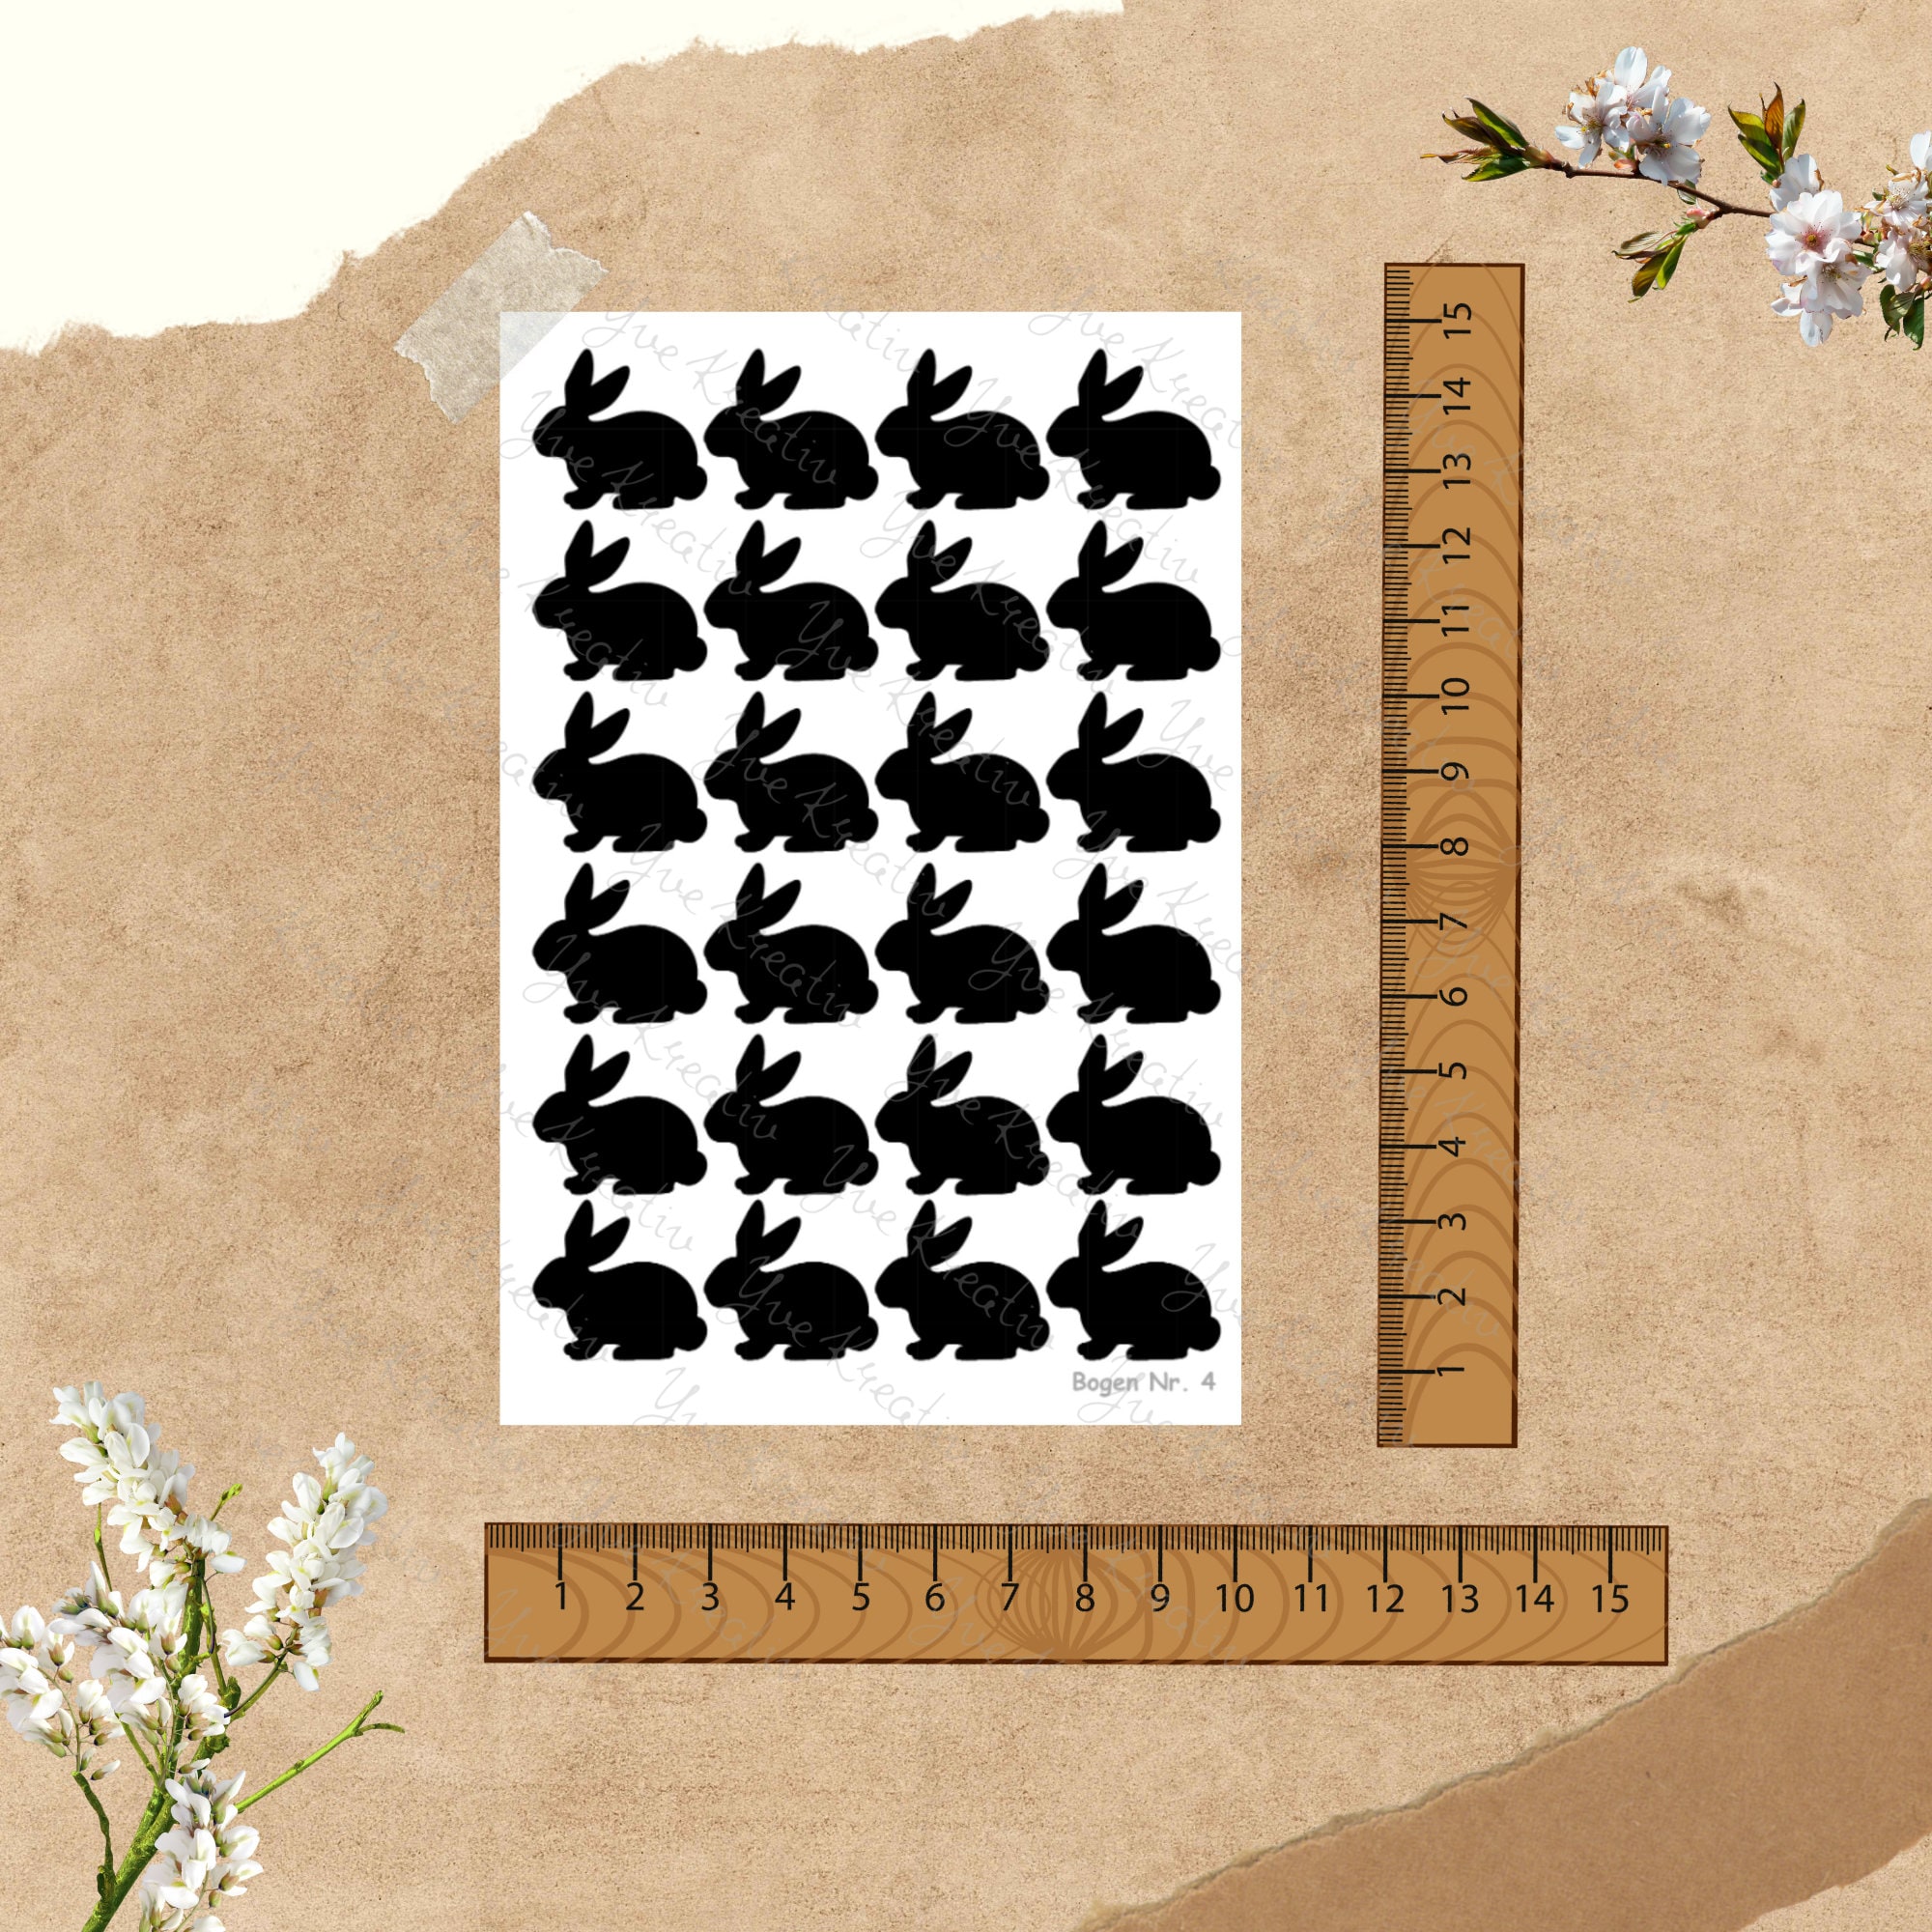 Sticker Bogen - Ostern Hase | 24 Sticker pro Bogen - Journal Sticker - Aufkleber 3 Stickerbogen zur Auswahl I Farbe wählbar